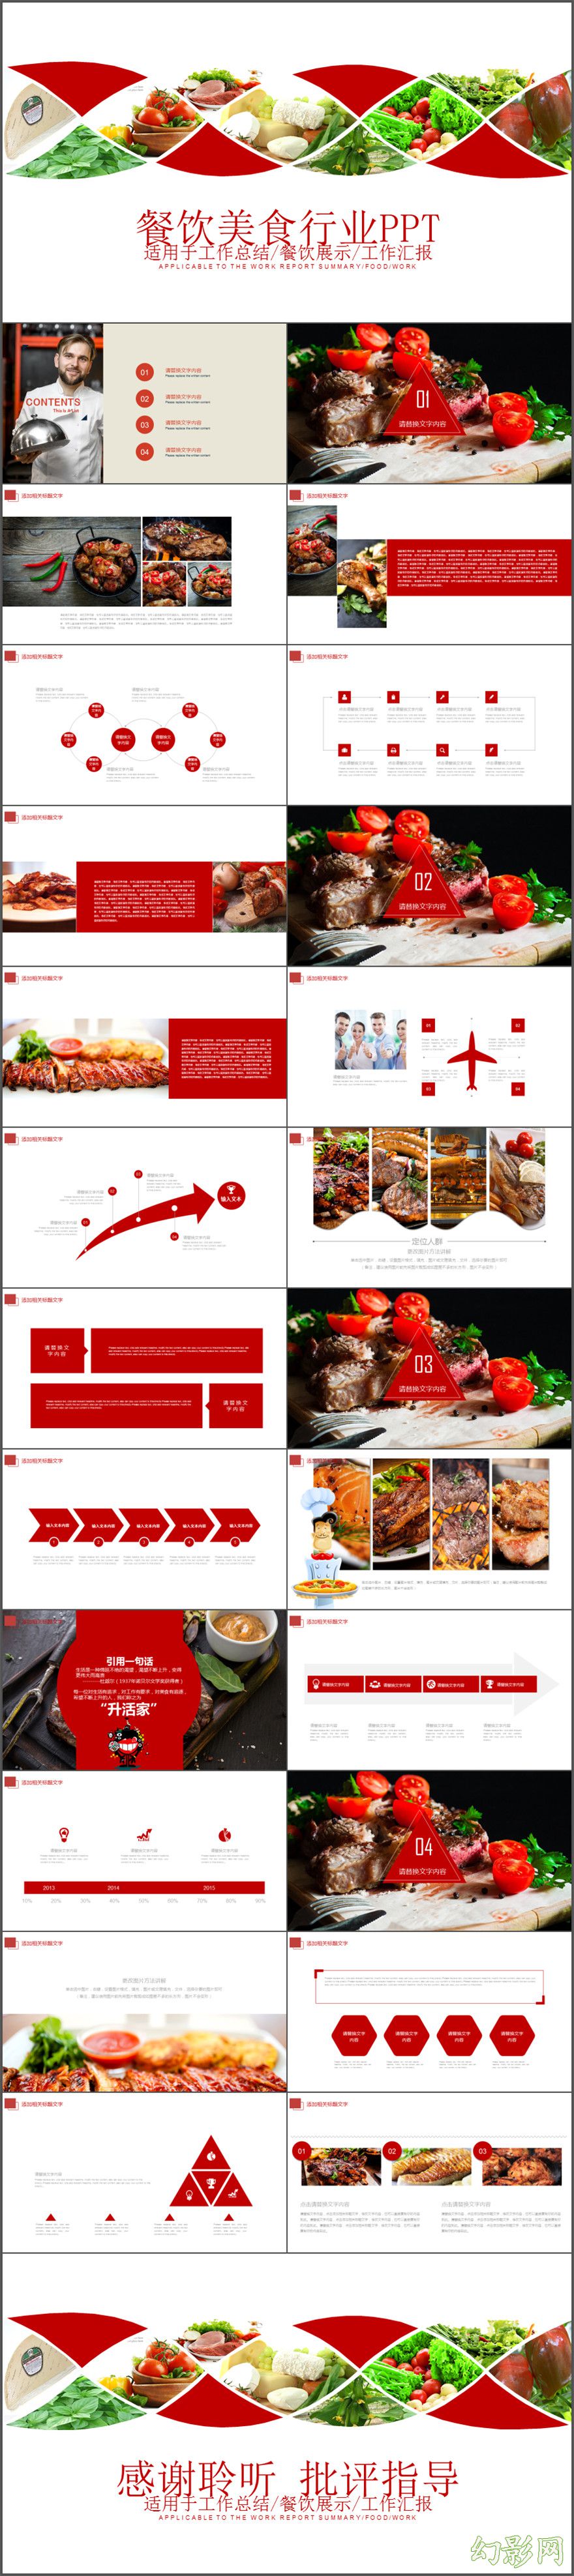 2017中国传统美食 中式餐厅美食介绍PPT模板